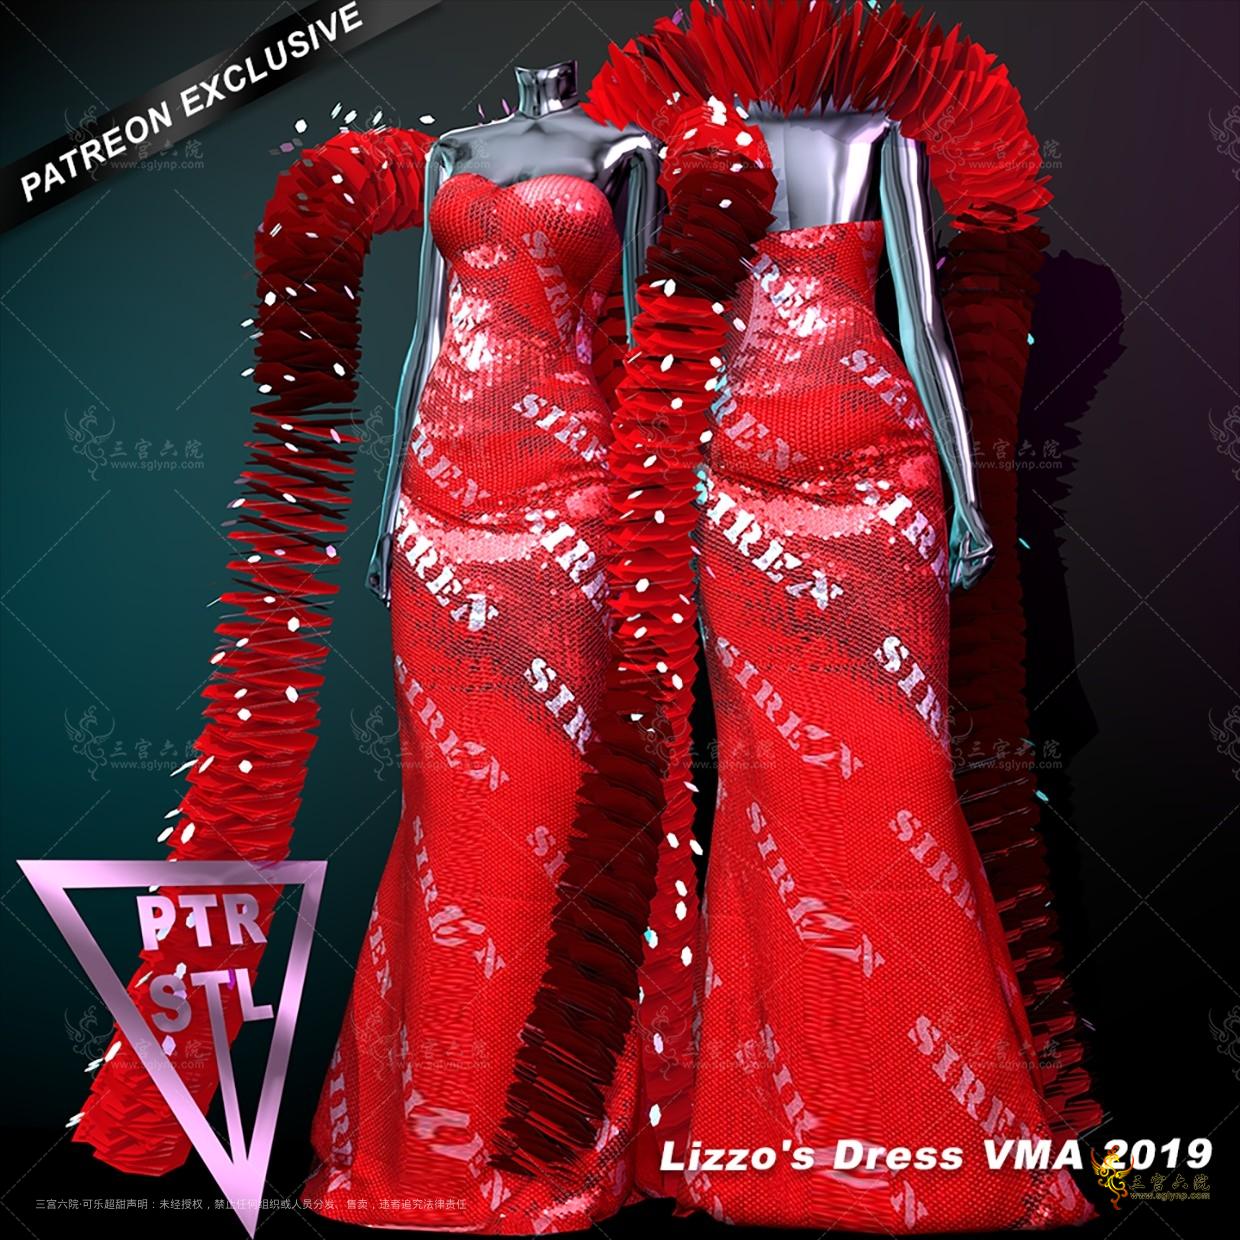 Pietro's Style Lizzo's Dress VMA 2019.png